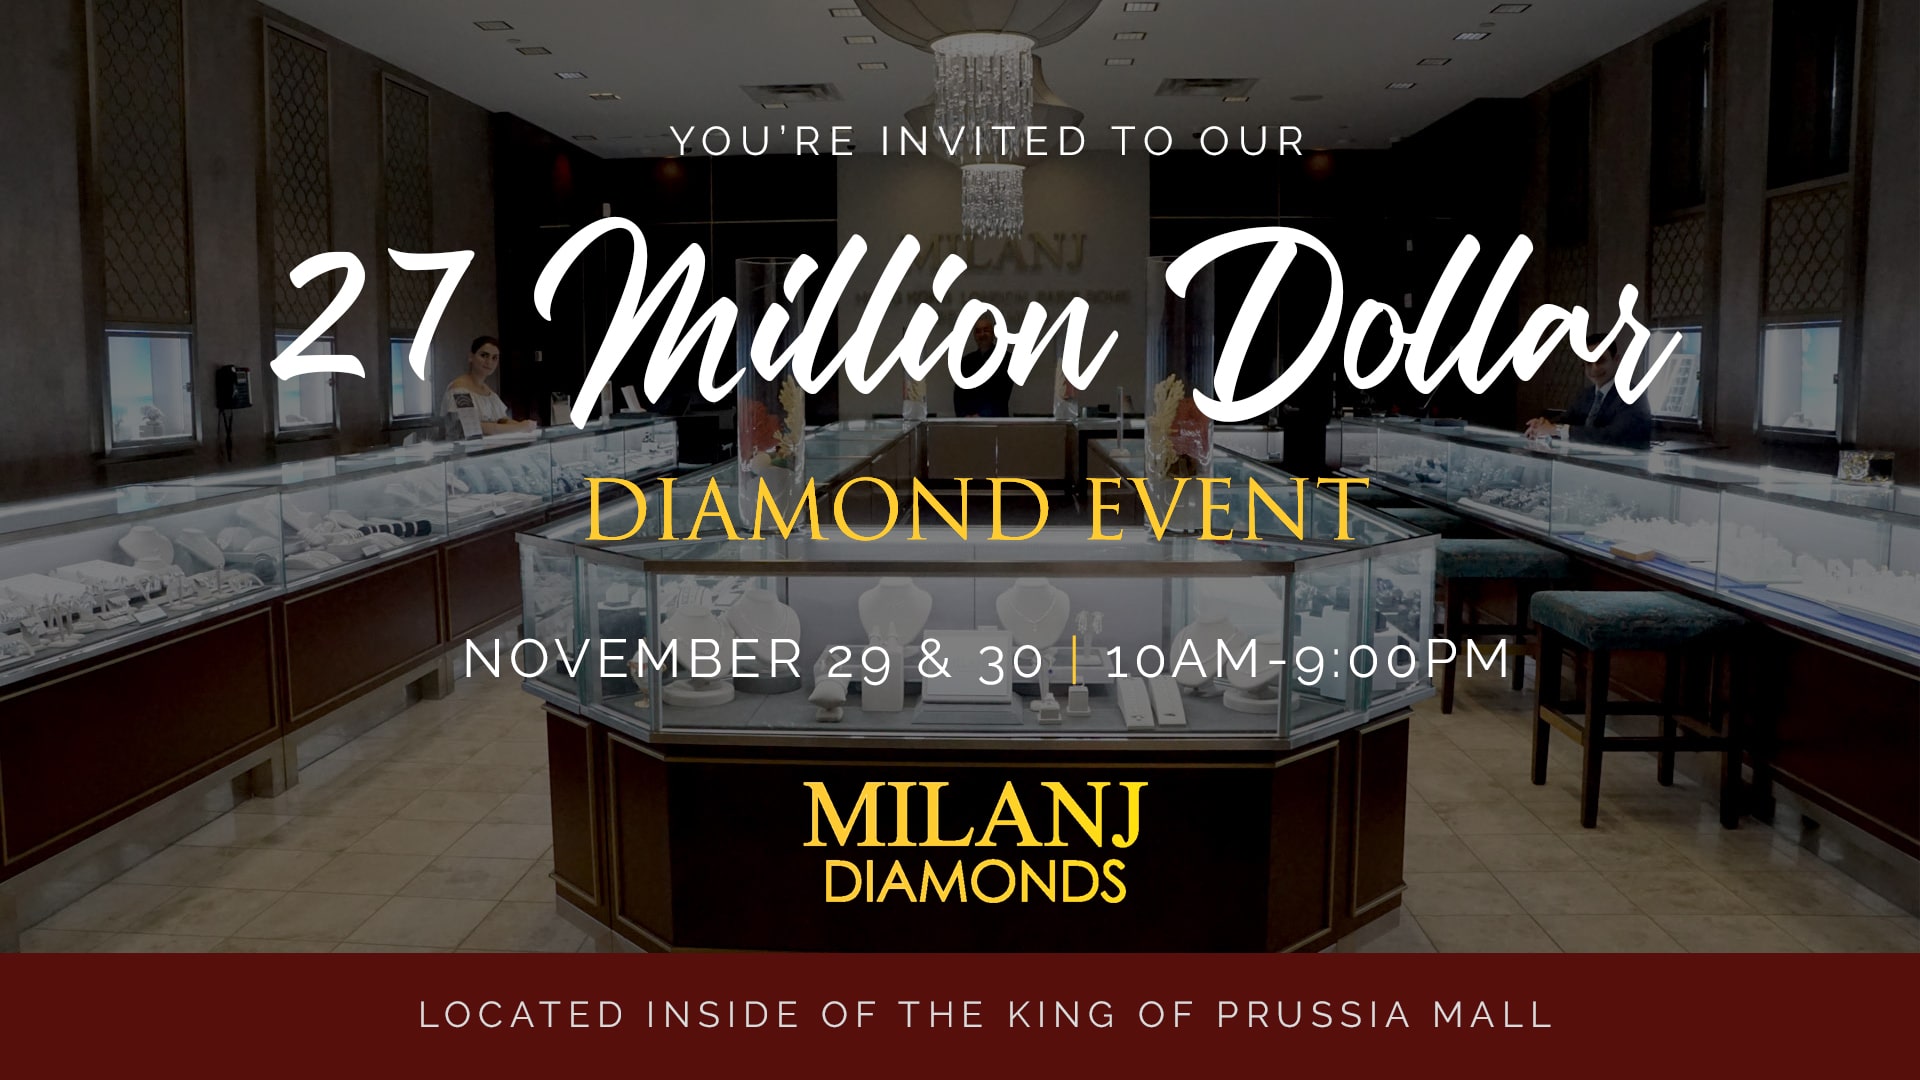 27 Million Dollar Diamond Event